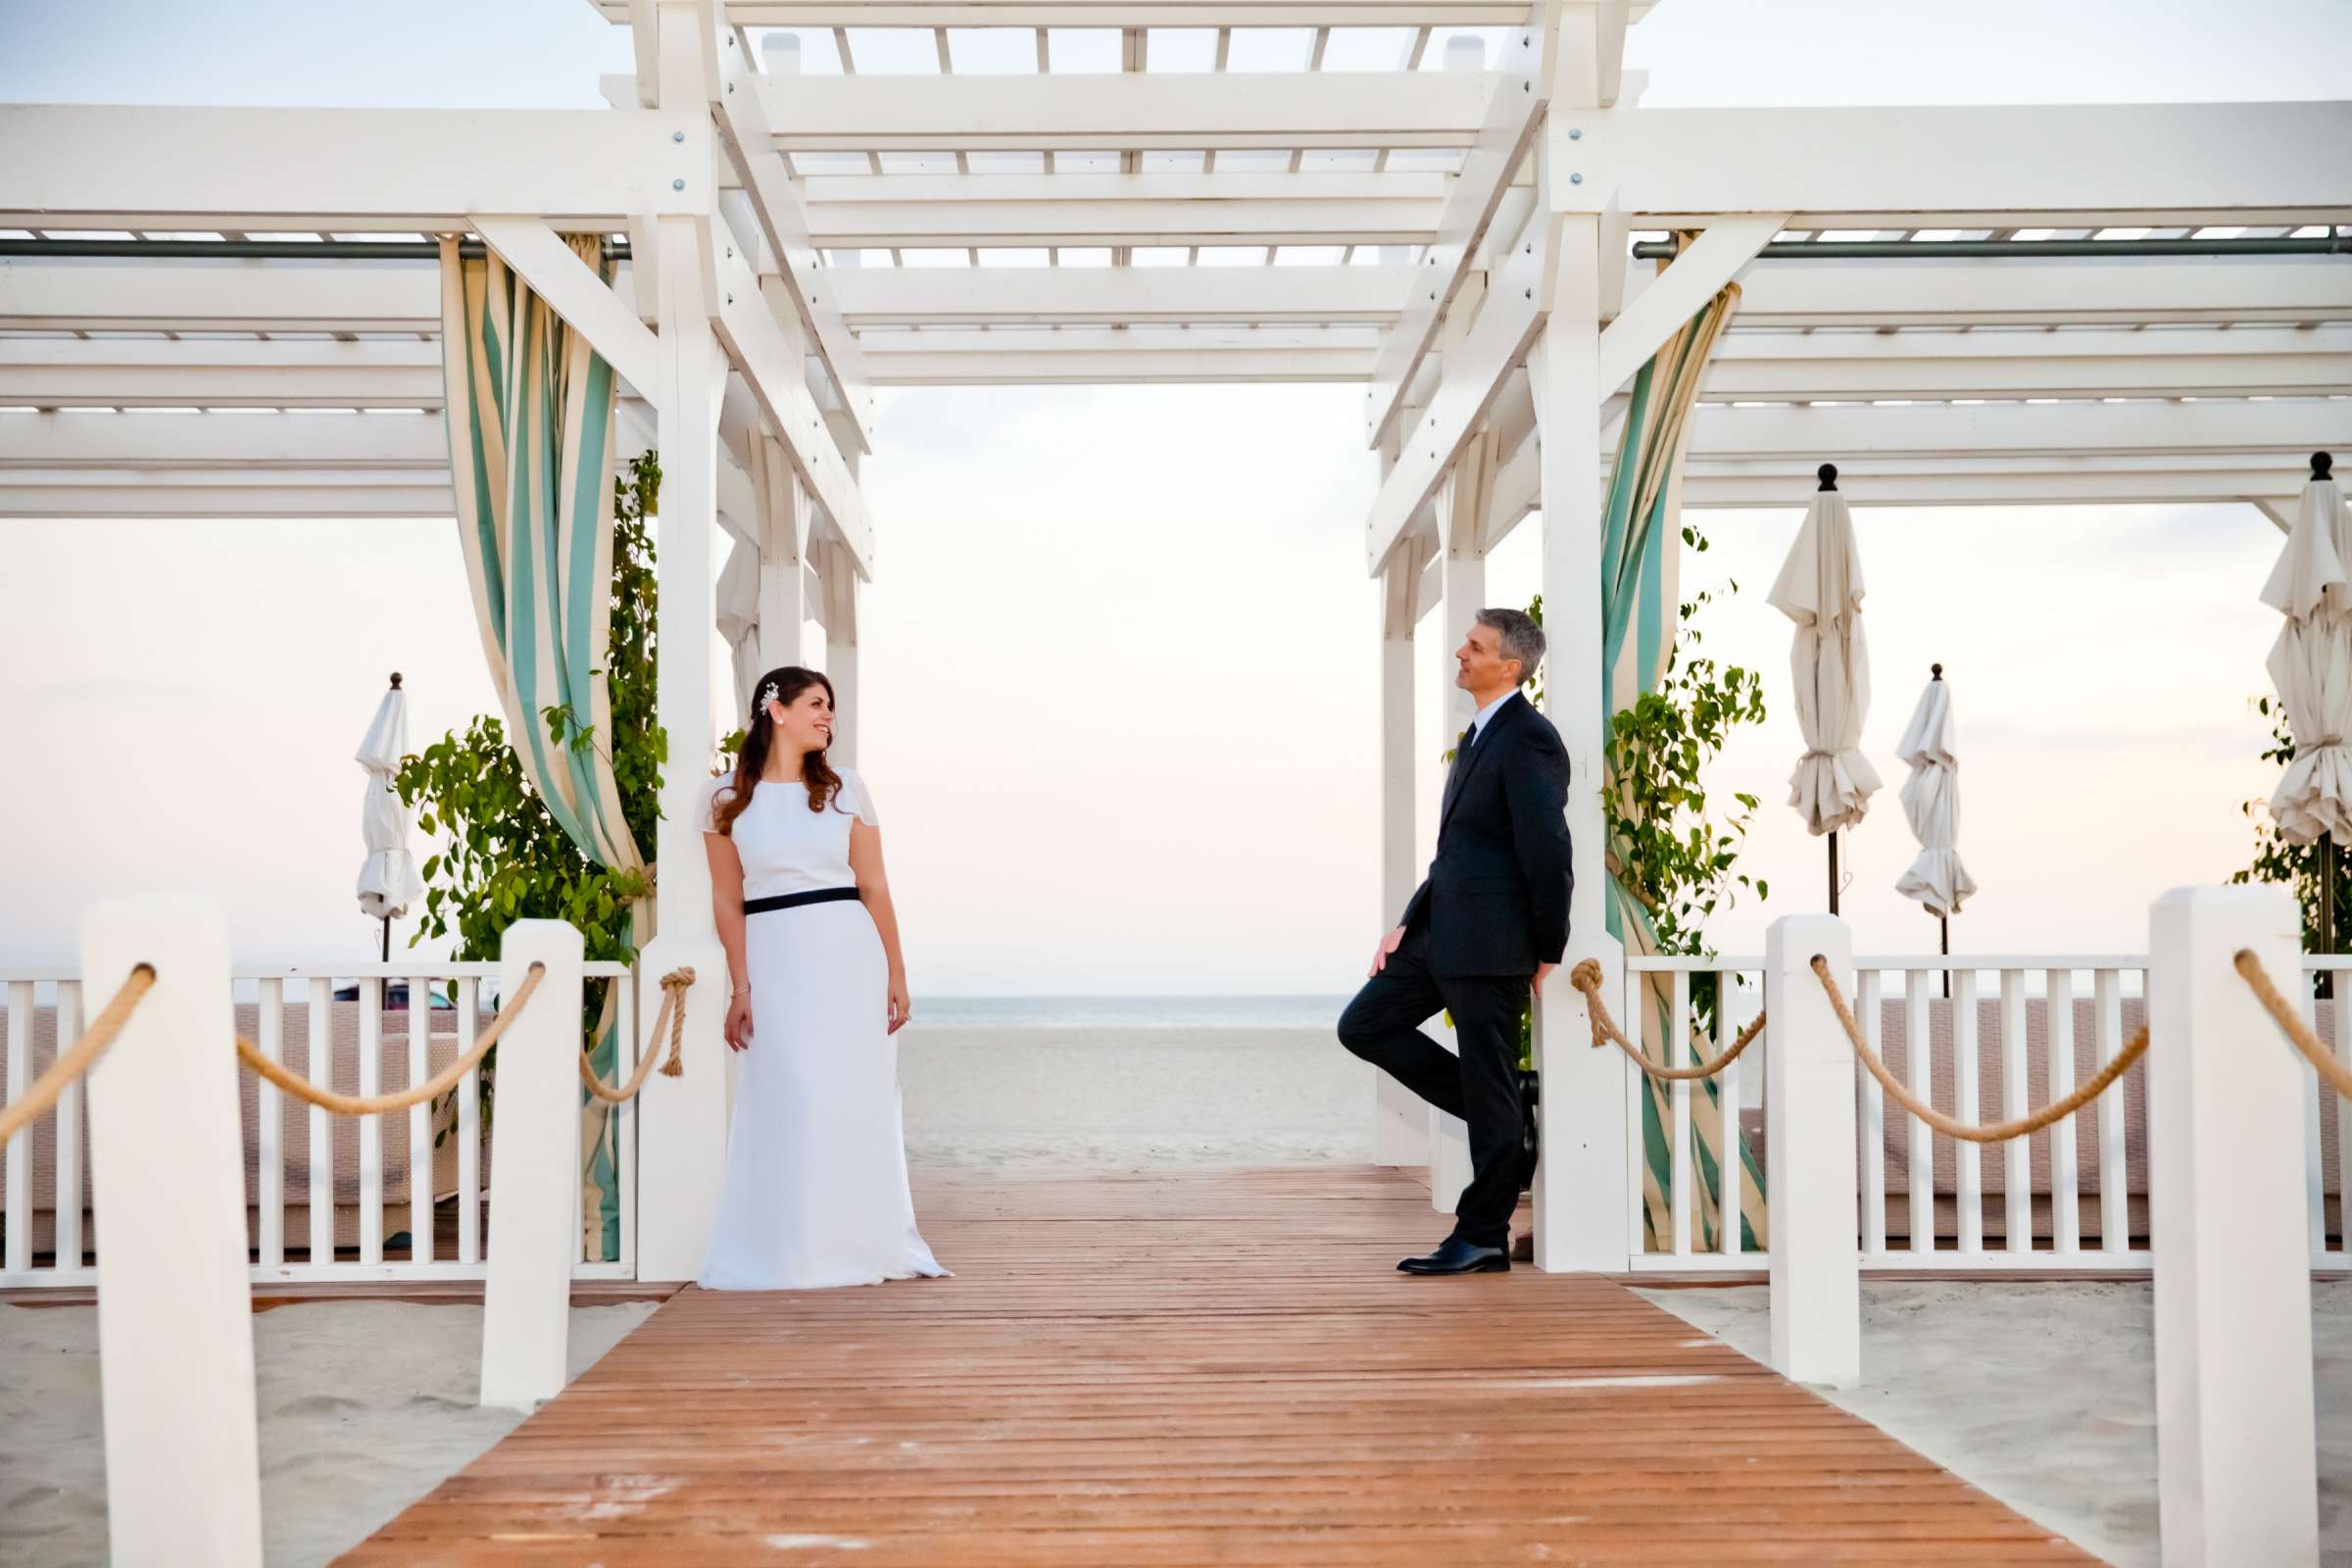 Hotel Del Coronado Wedding, Melis and Marc Wedding Photo #1 by True Photography